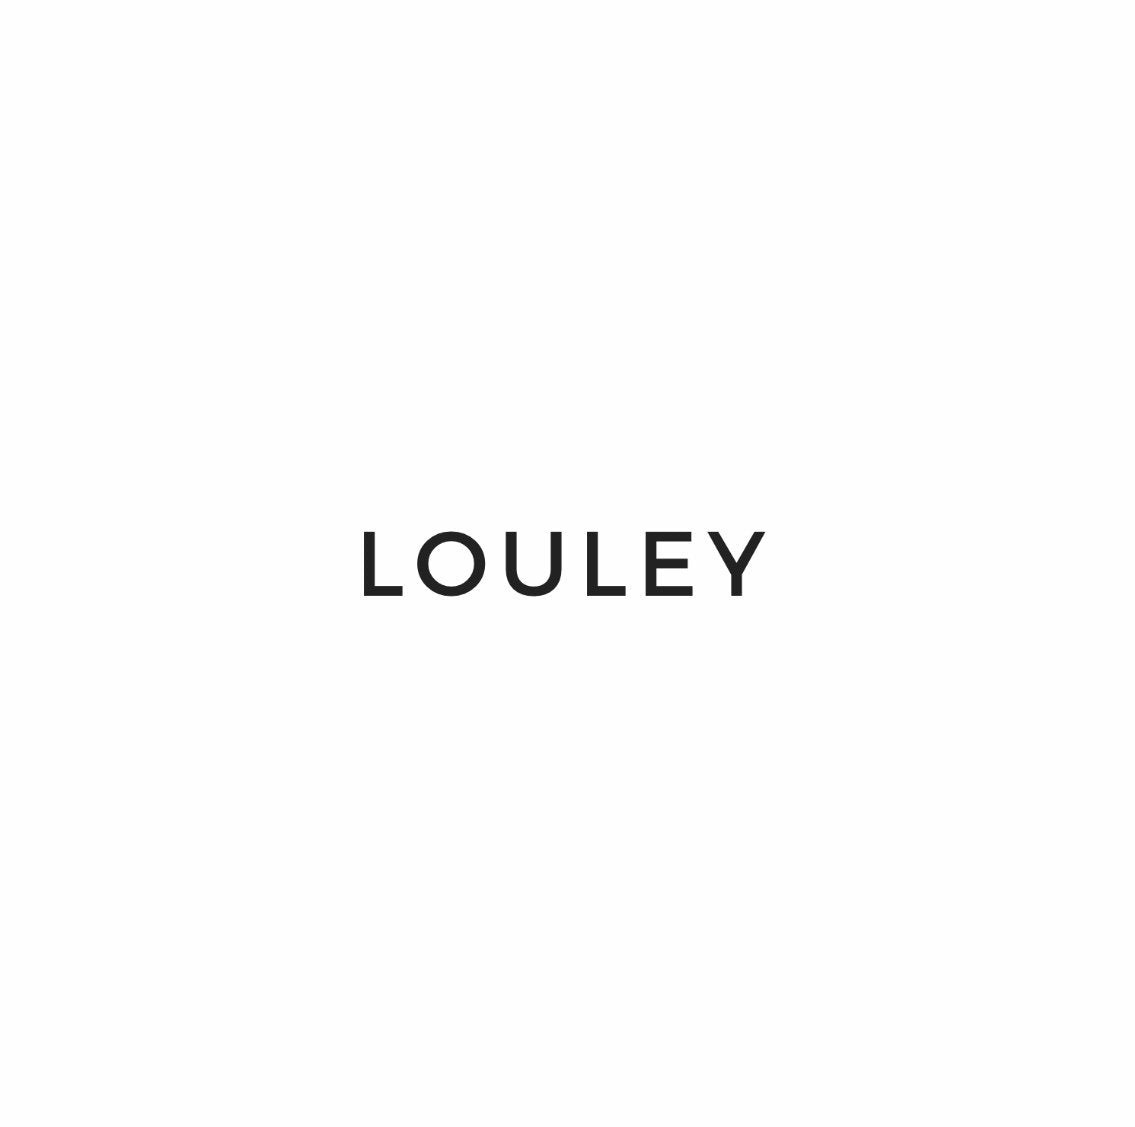 Louley